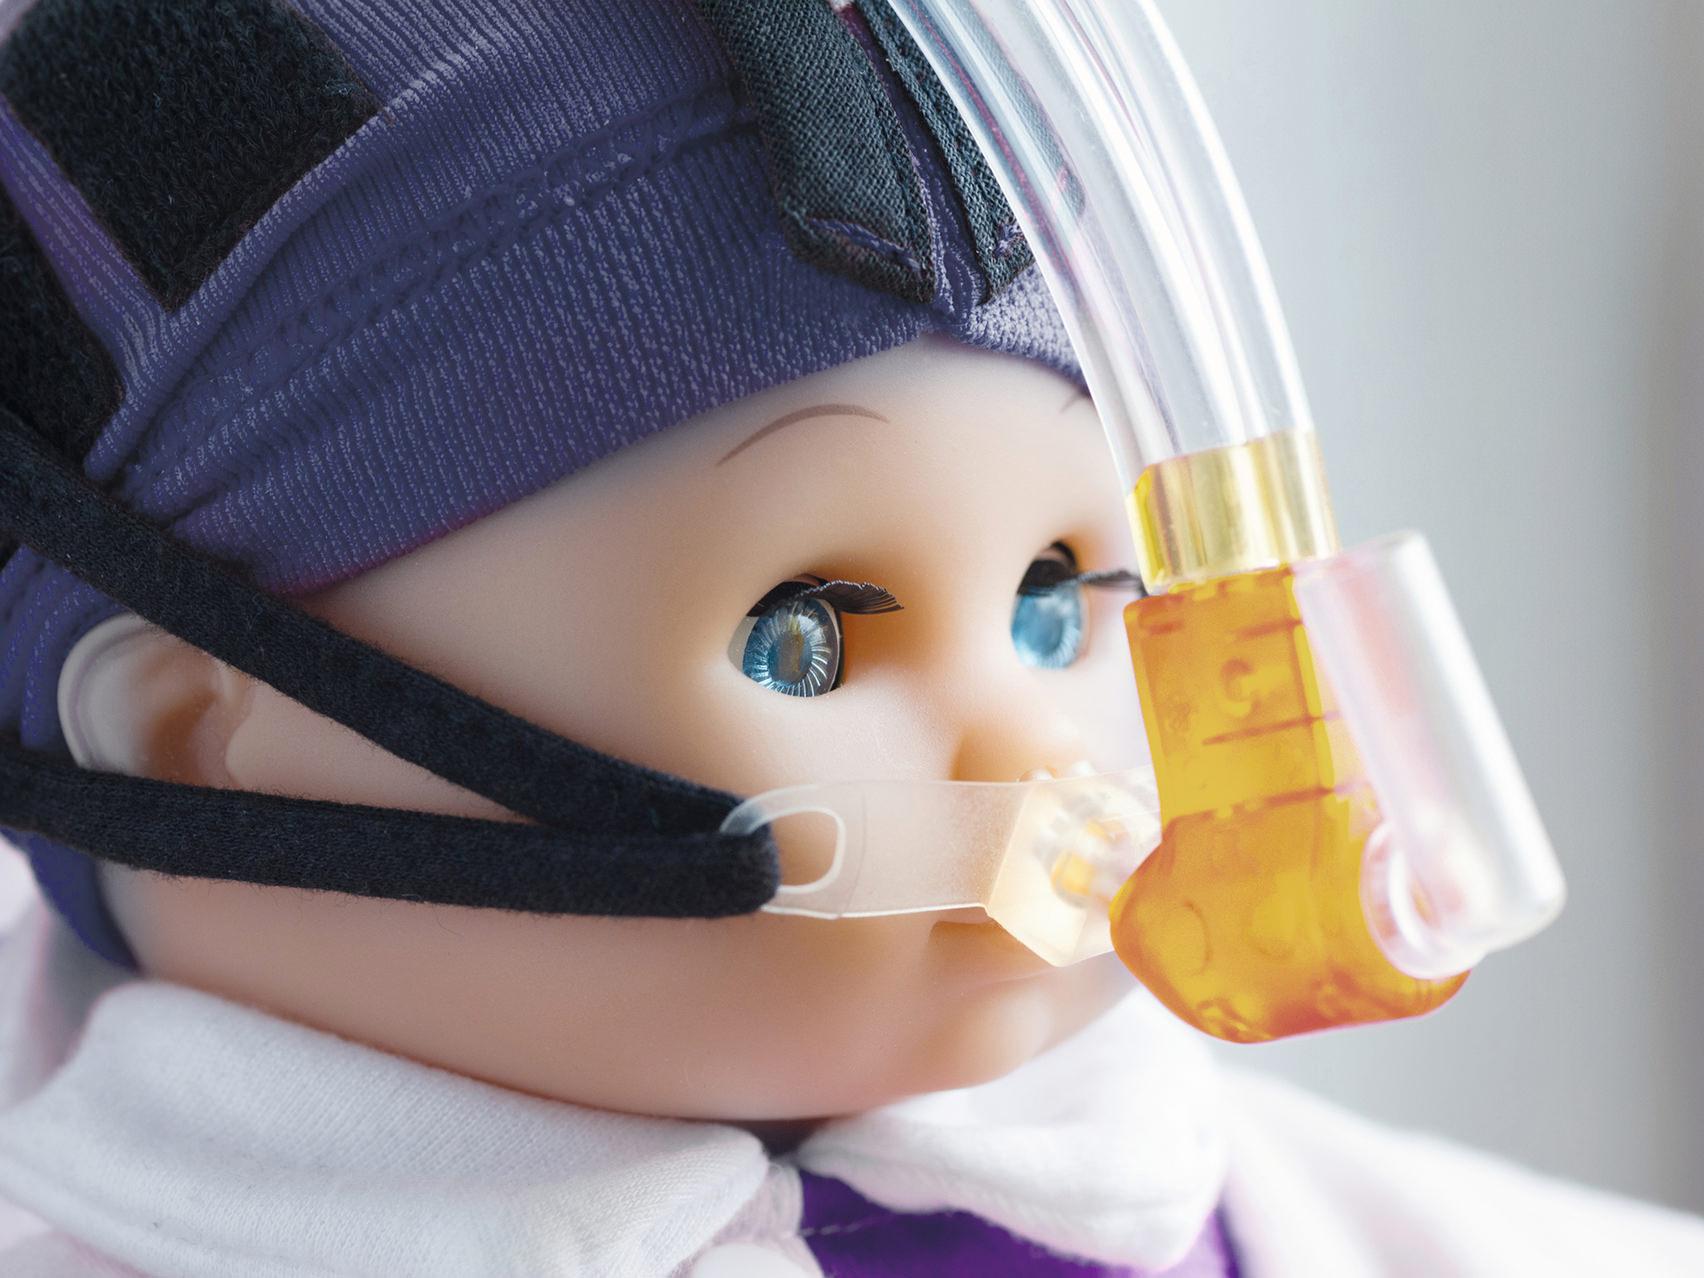 酸素マスクをつけた人形の拡大写真。